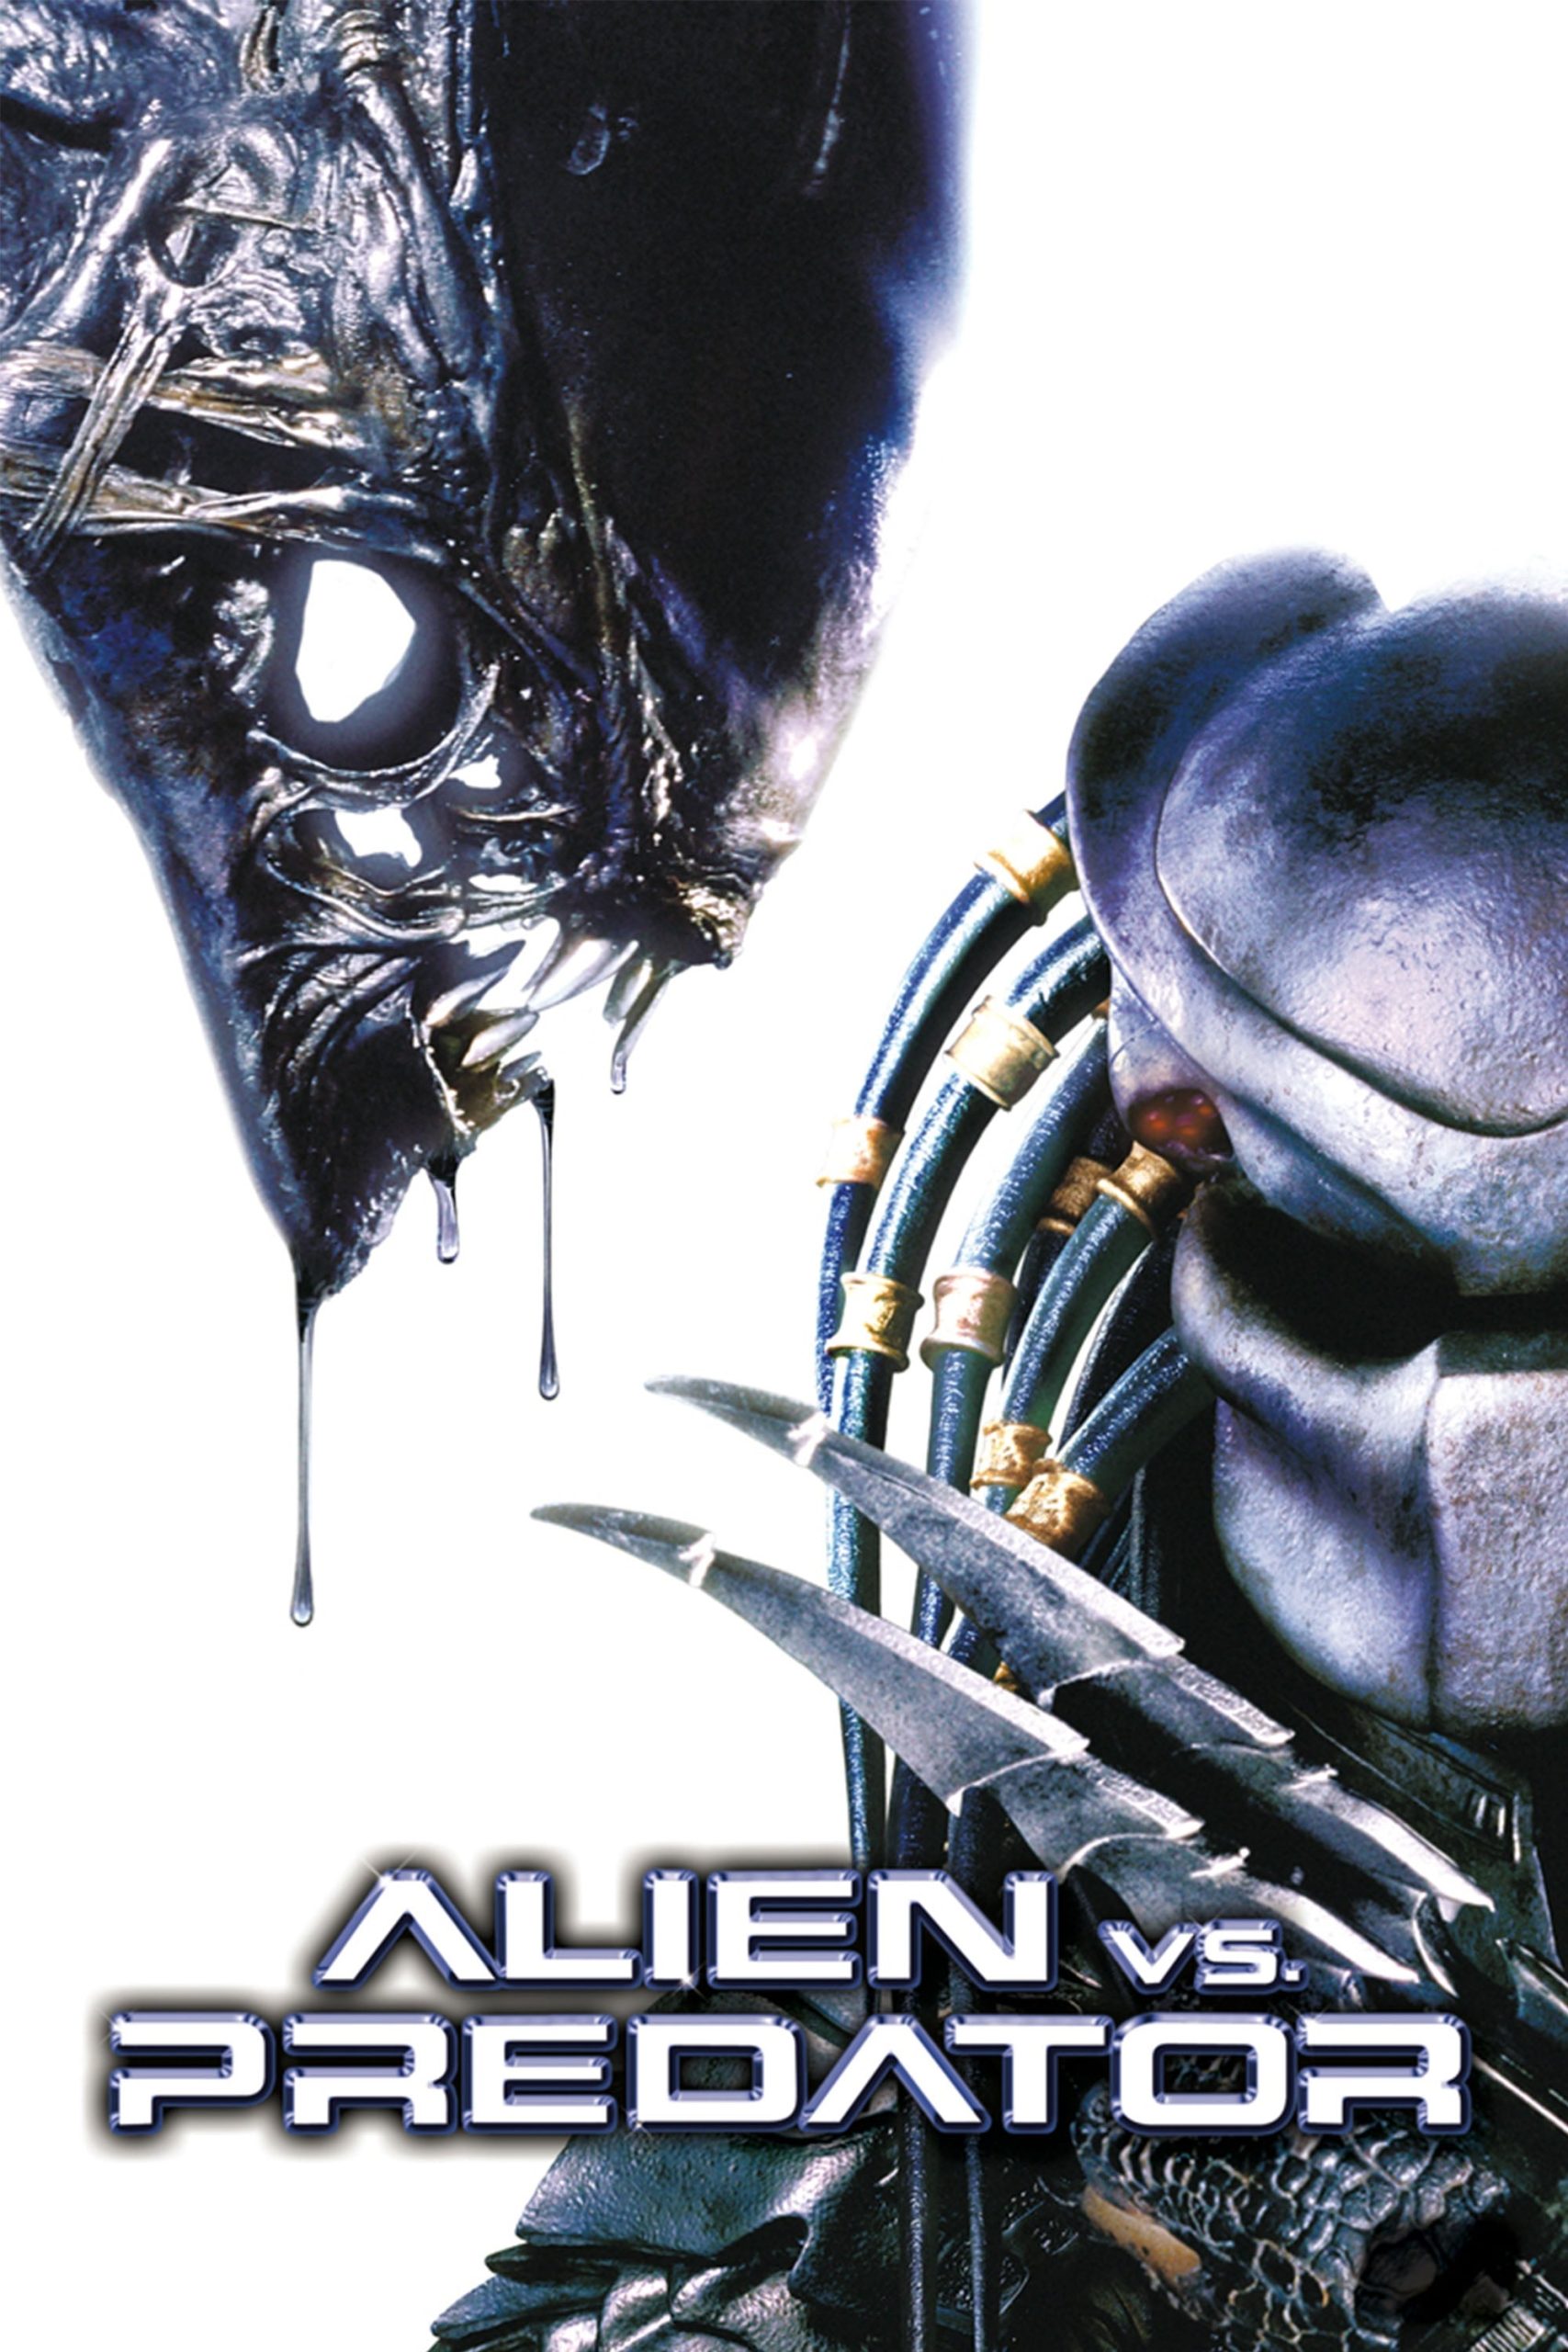 Alien Versus Predator (2004)